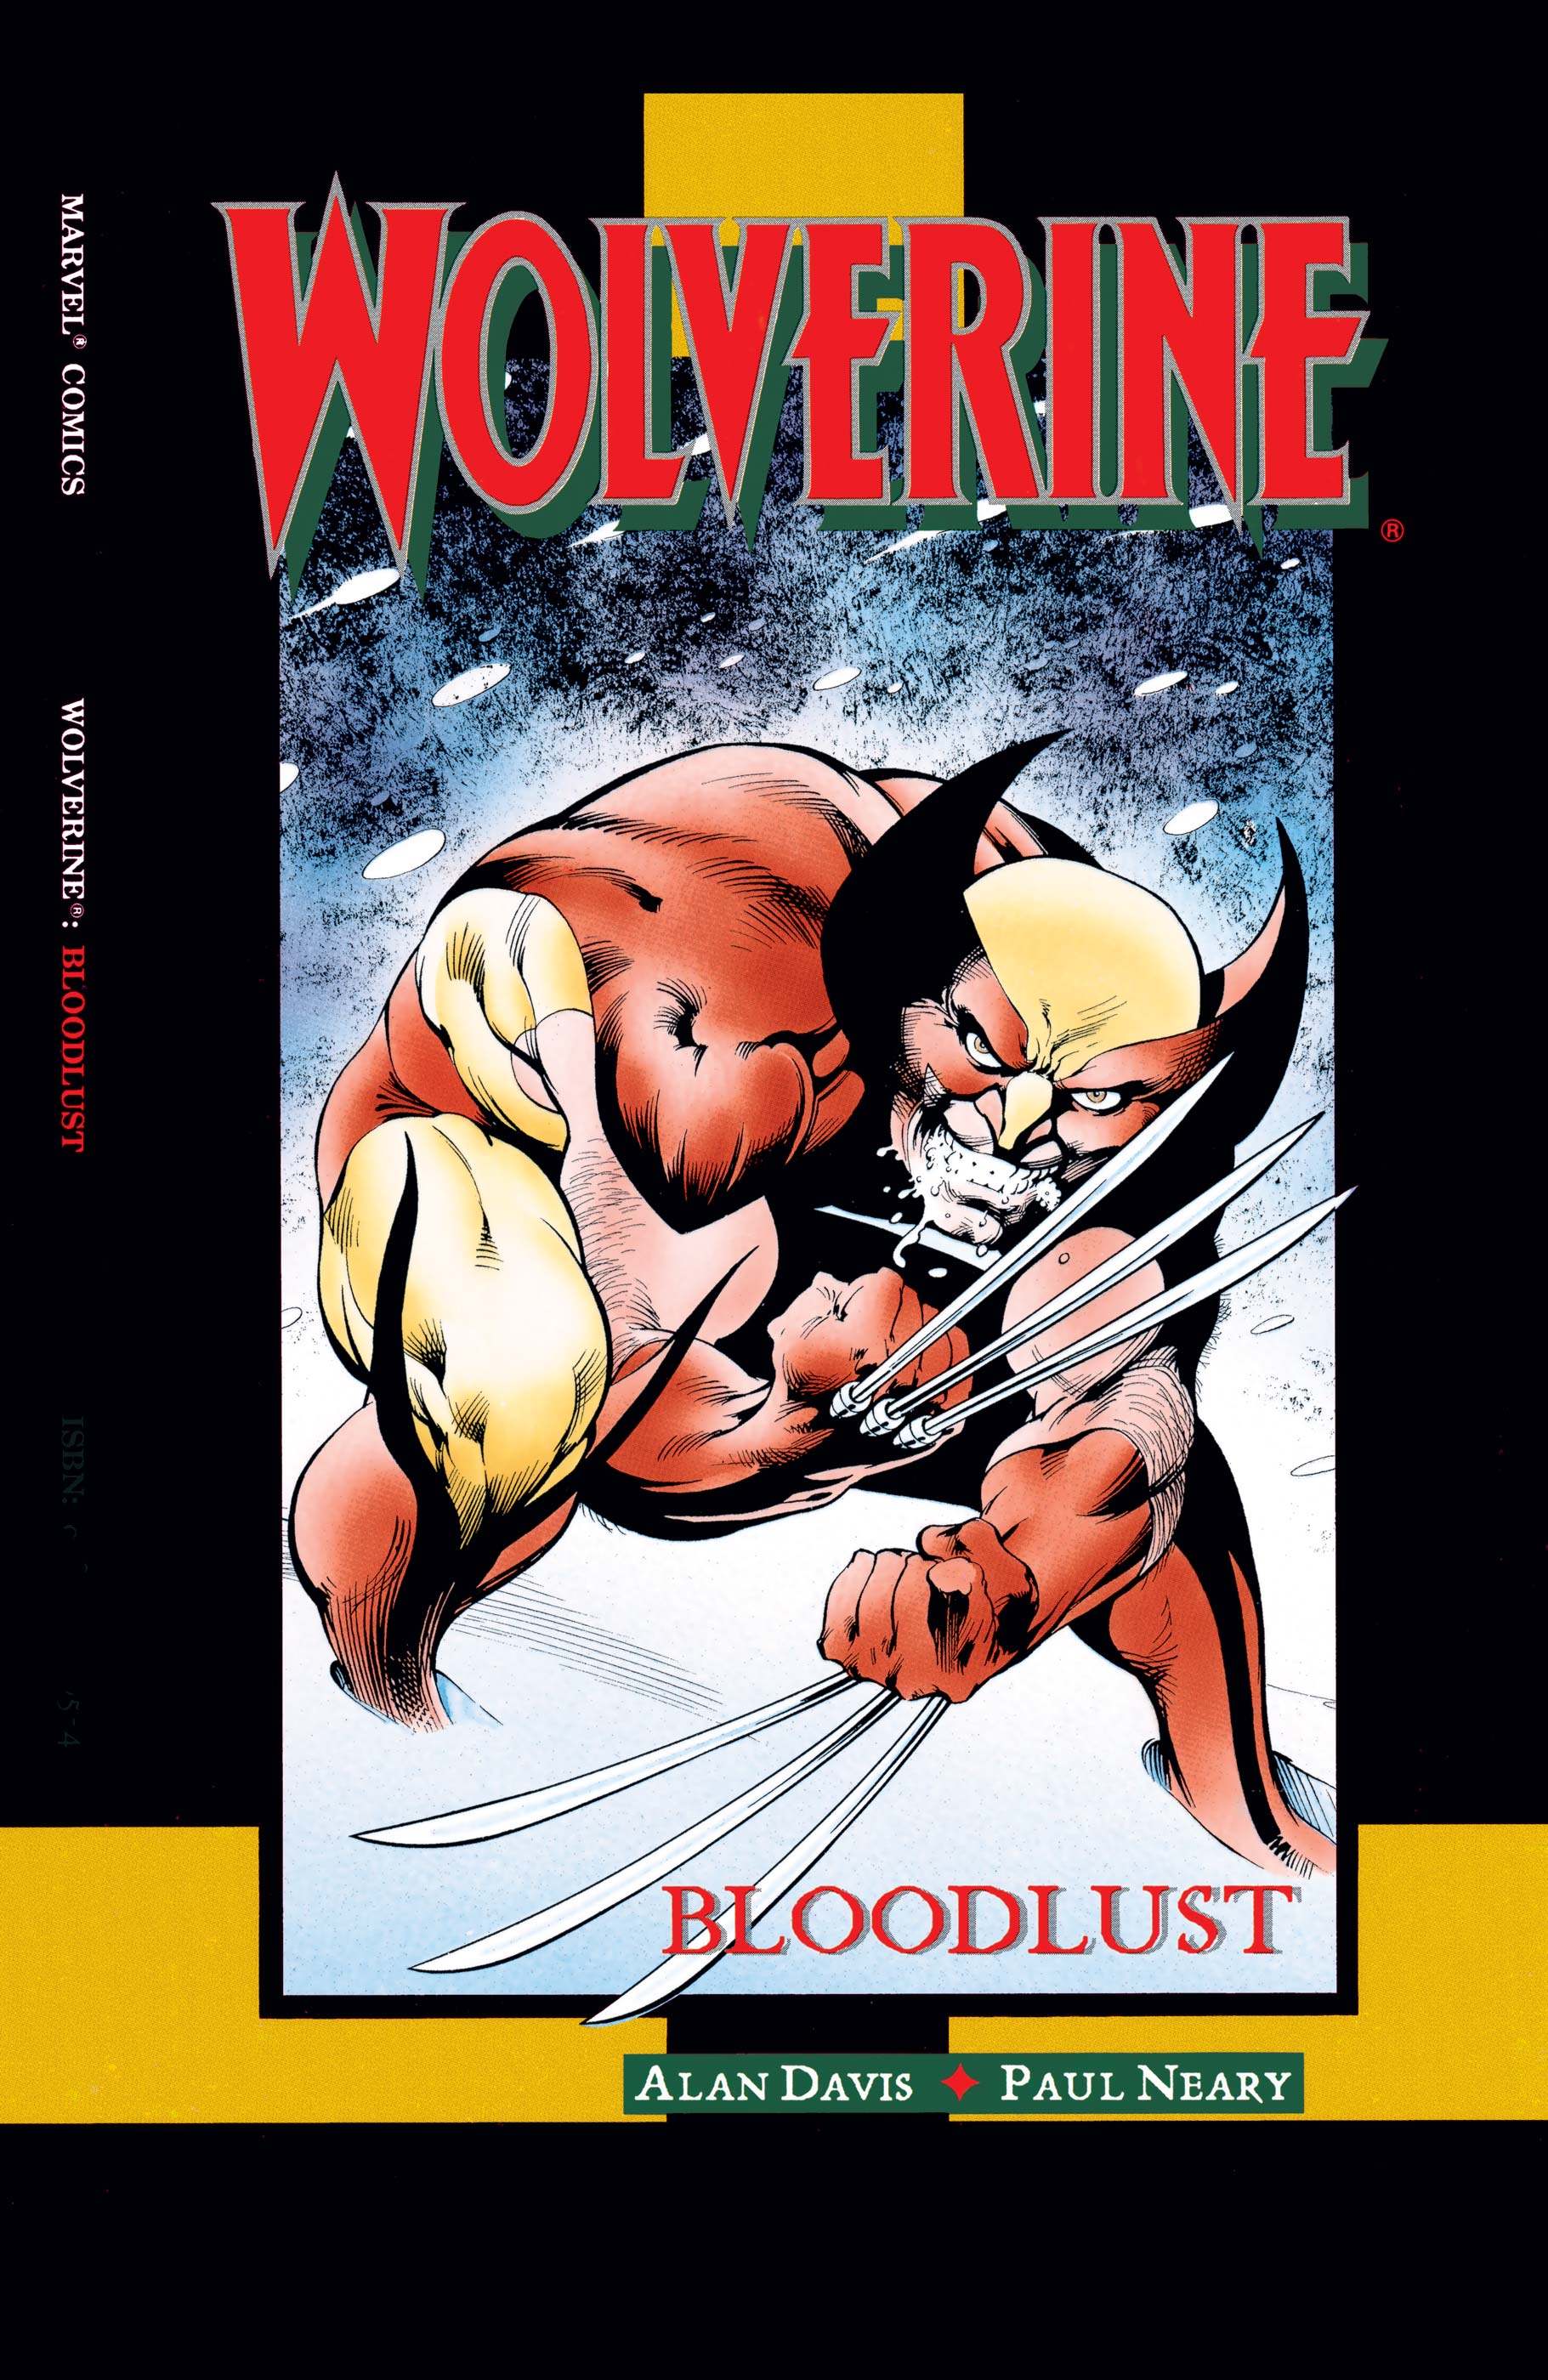 Wolverine bloodlust